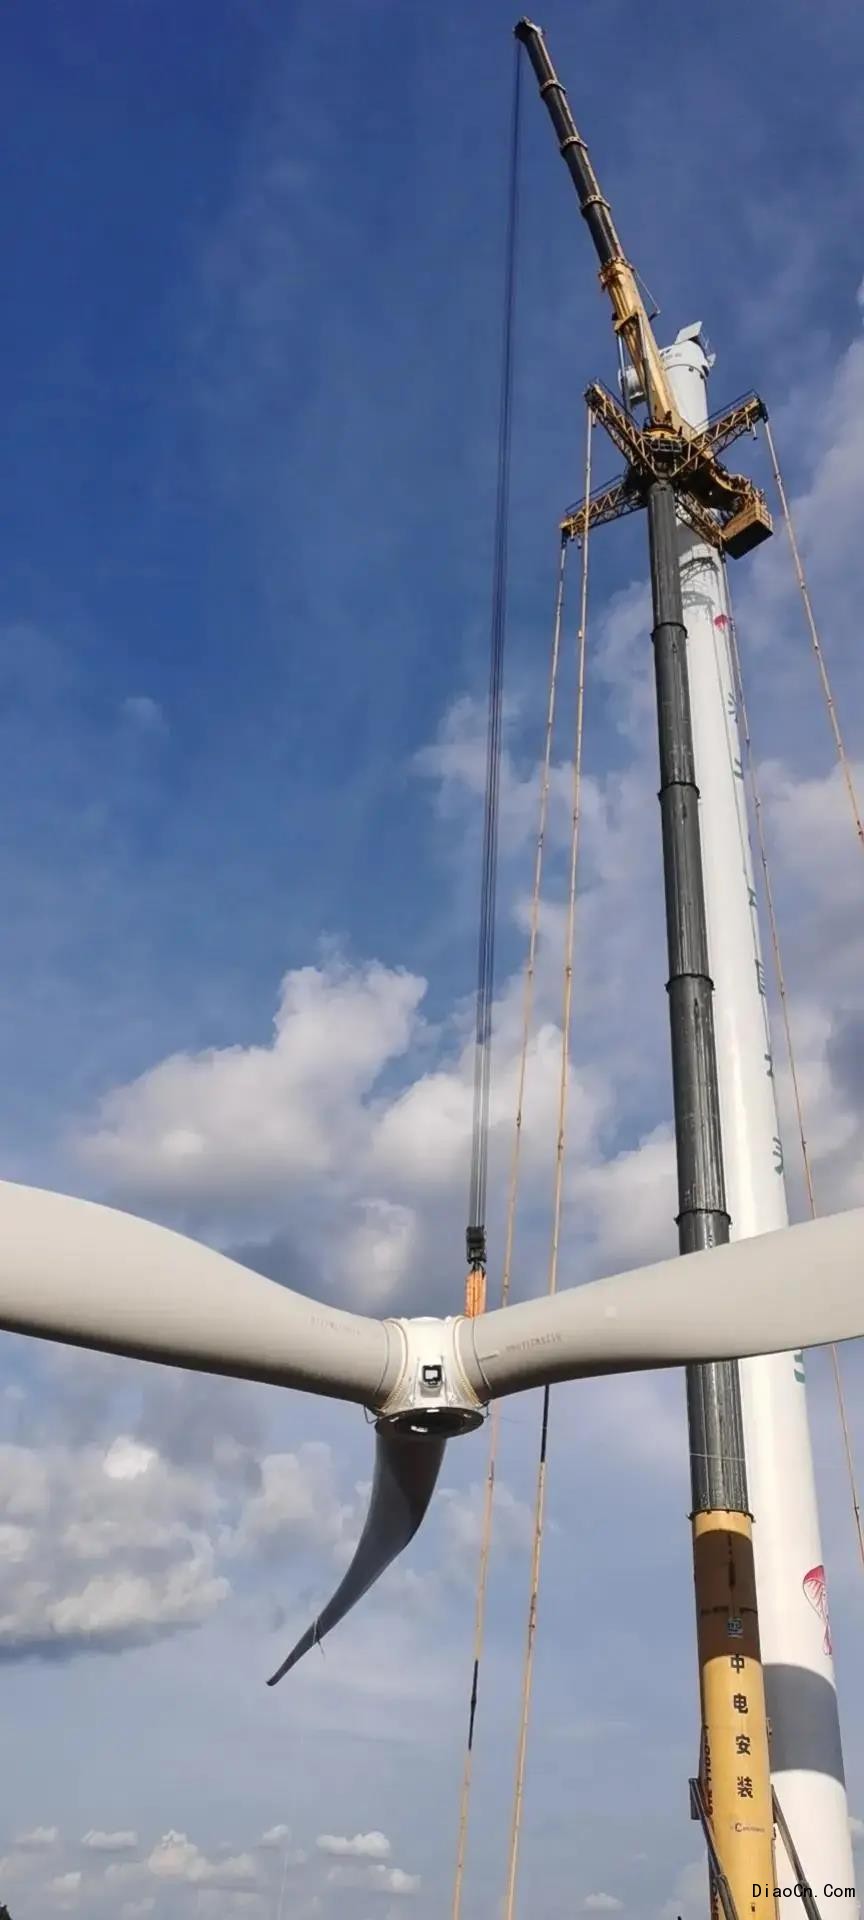 风机轮毂中心高度100米,叶轮直径156米和166米